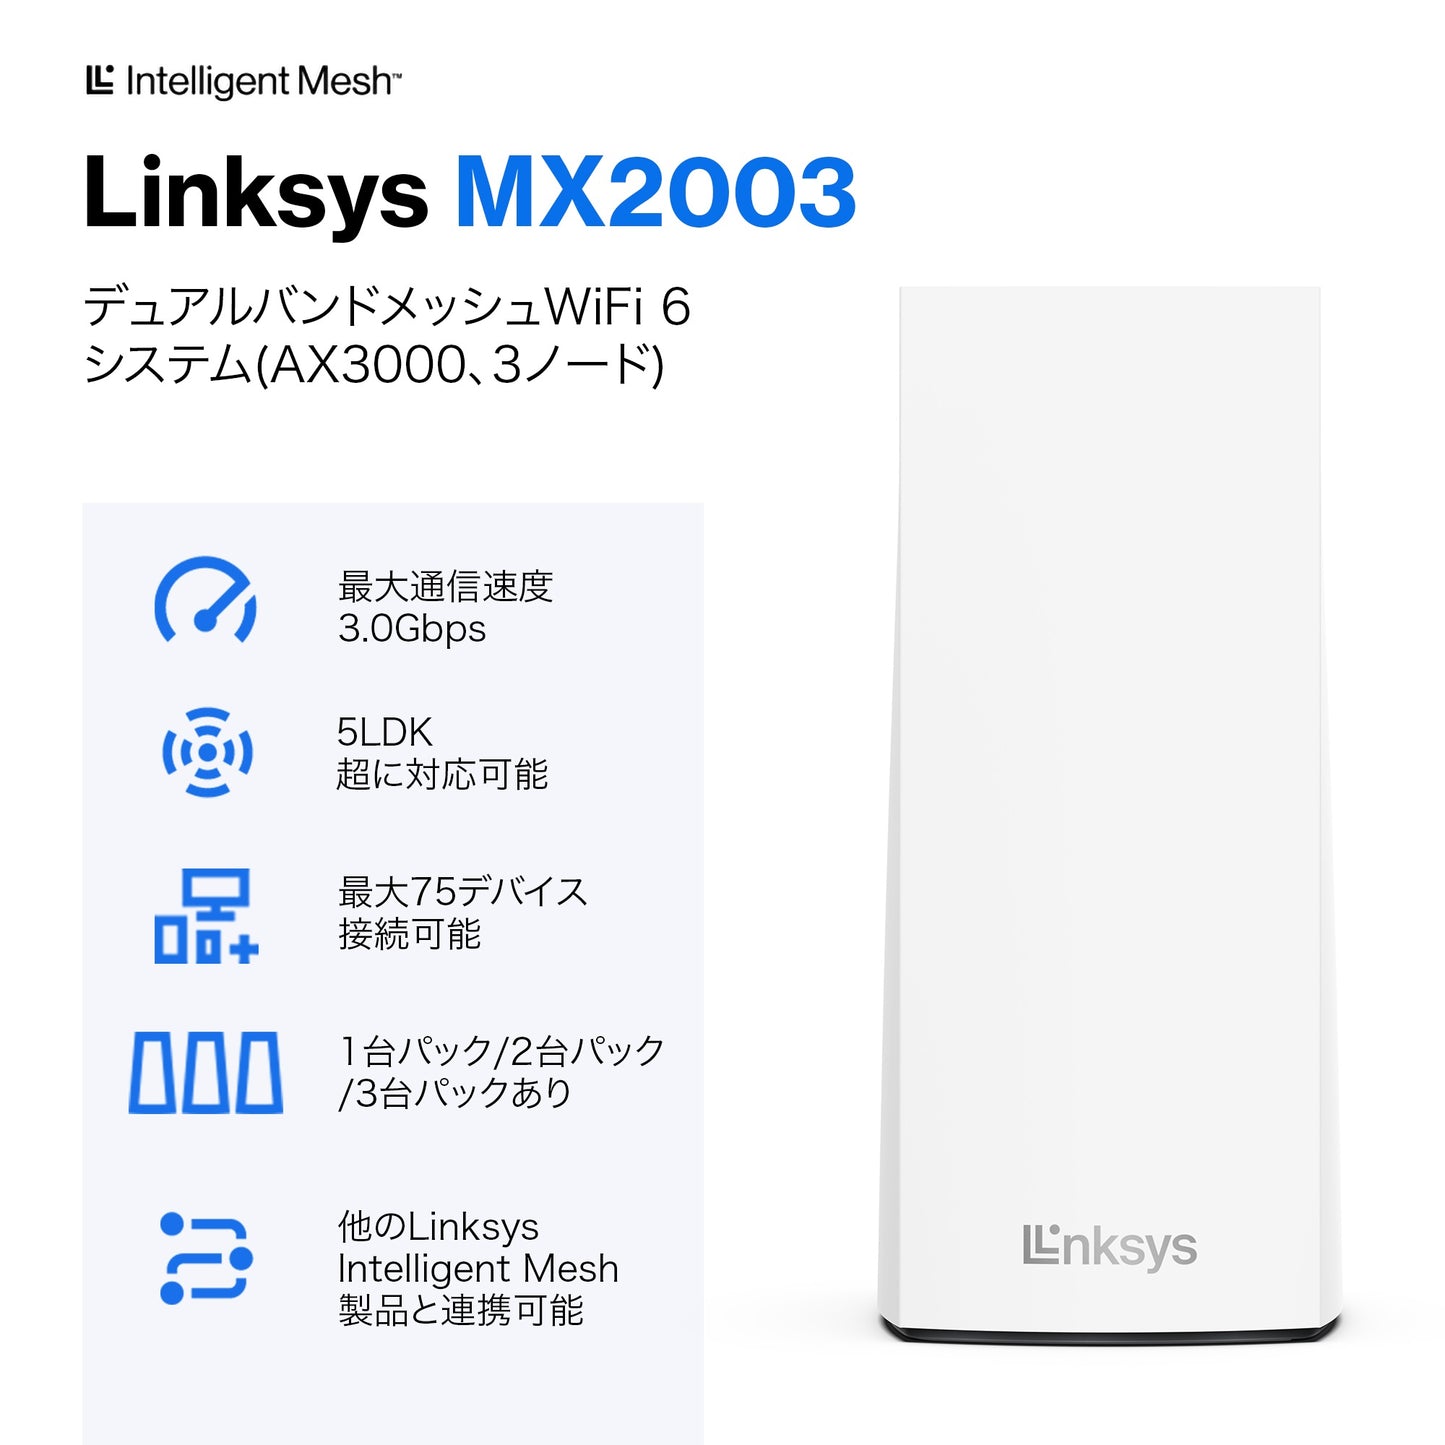 MX2003-JP デュアルバンド WiFi 6 ax3000 メッシュシステム 3 pack